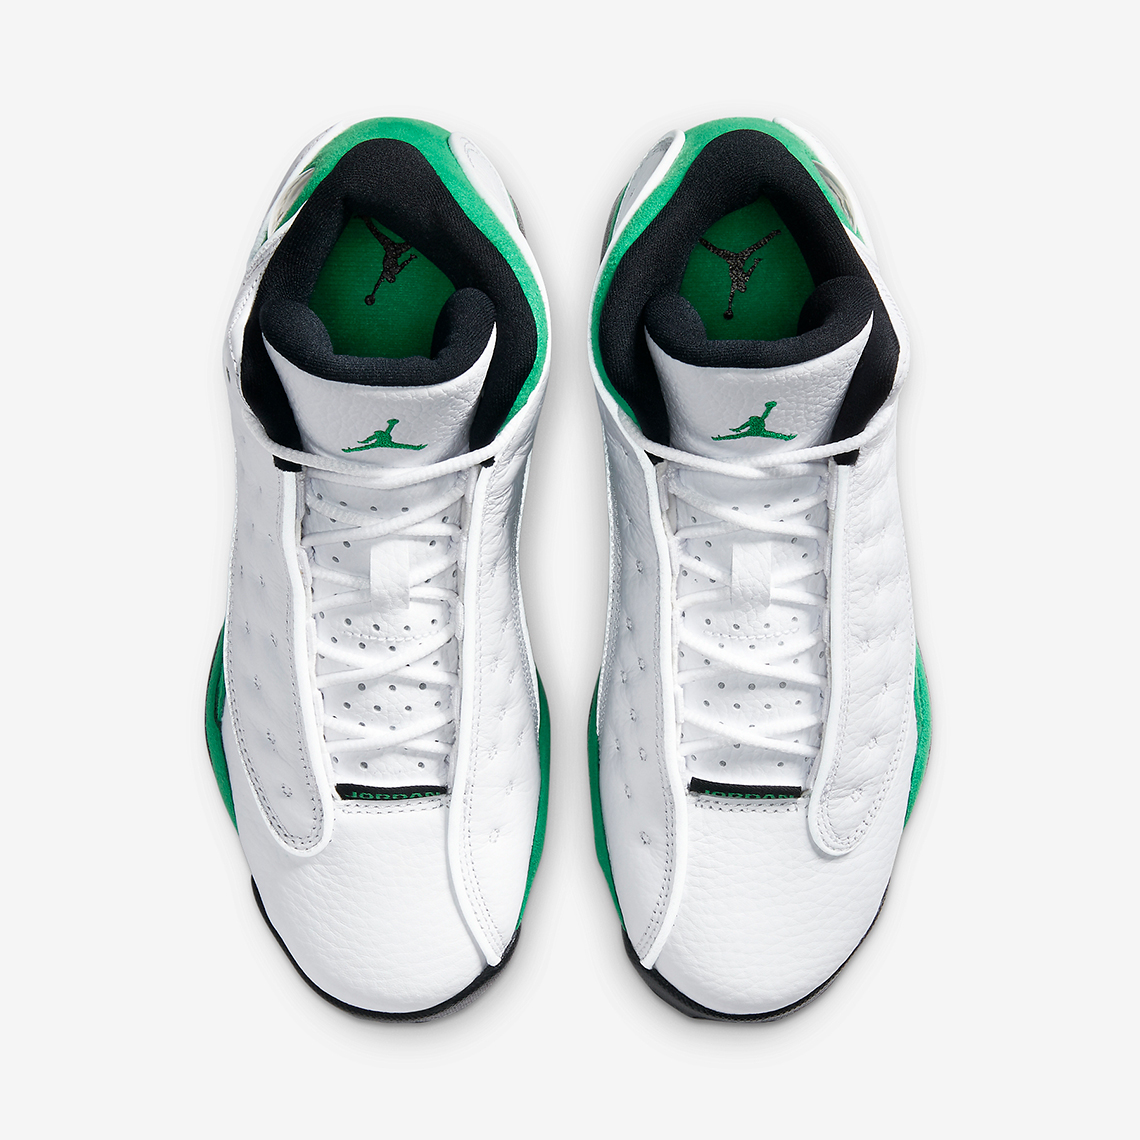 Air Jordan 13 Lucky Green Gs Release Info 2